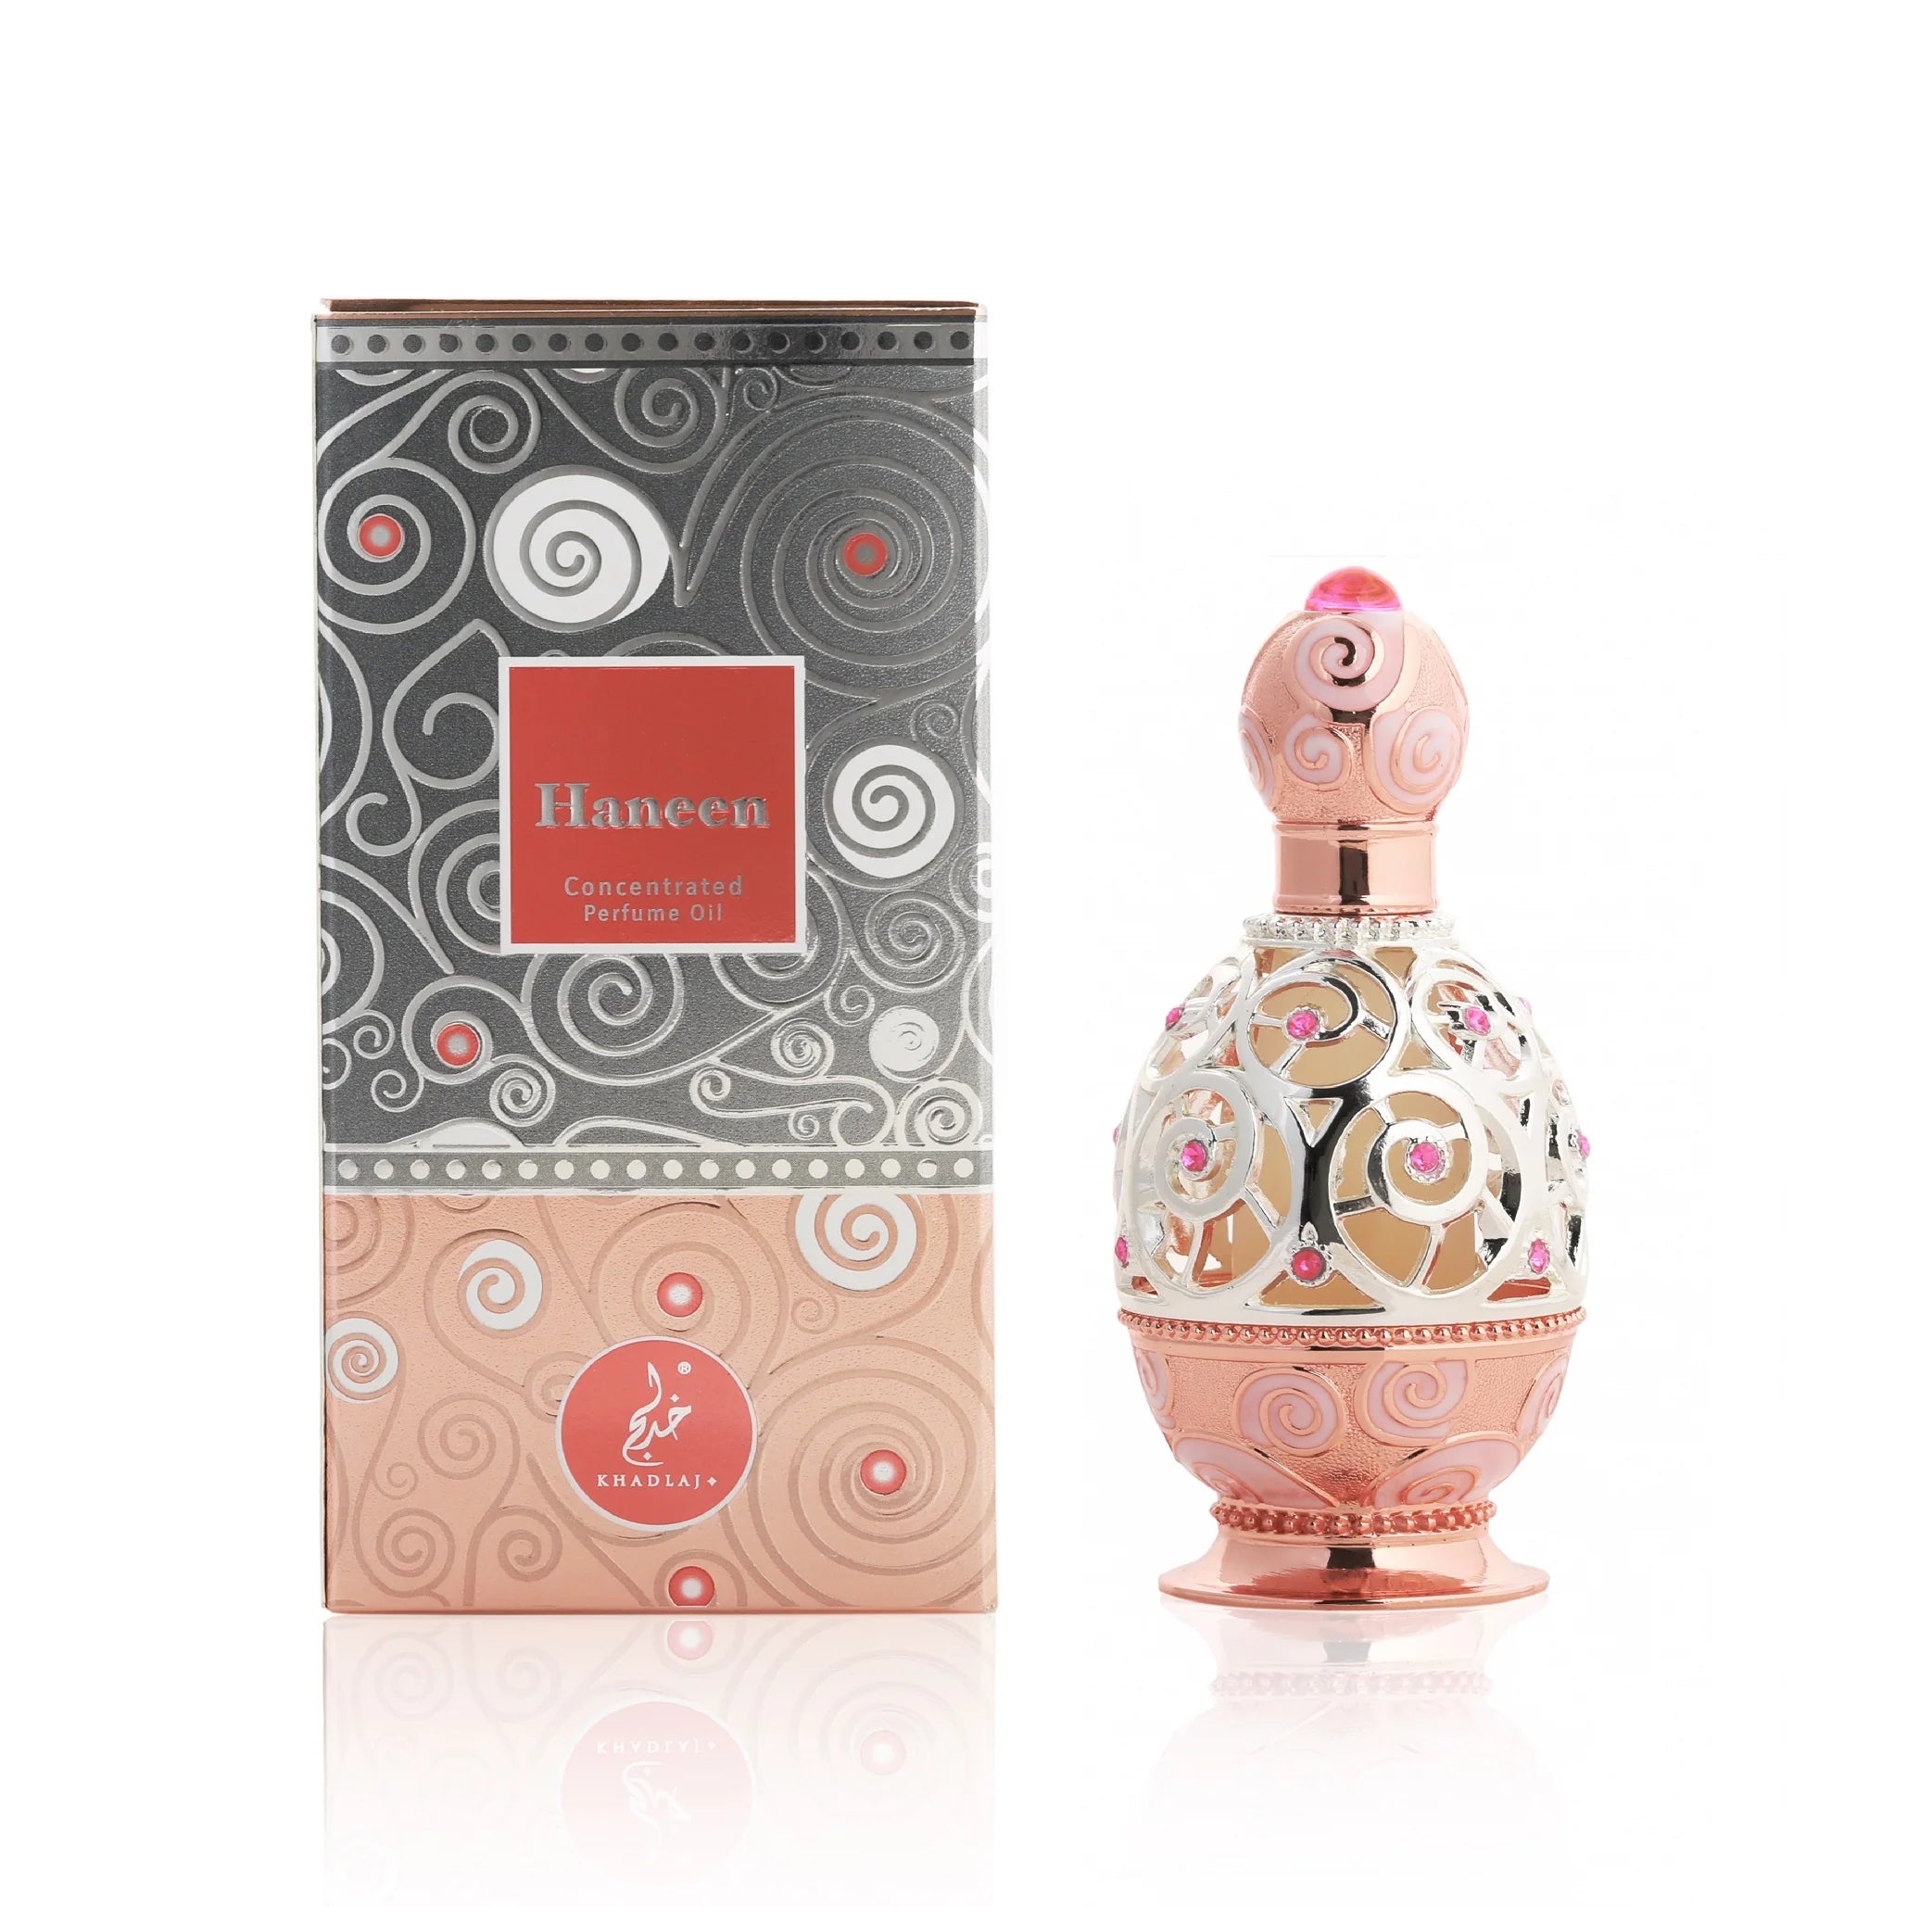 Haneen Rose Gold CPO (20ml) perfume oil by Khadlaj